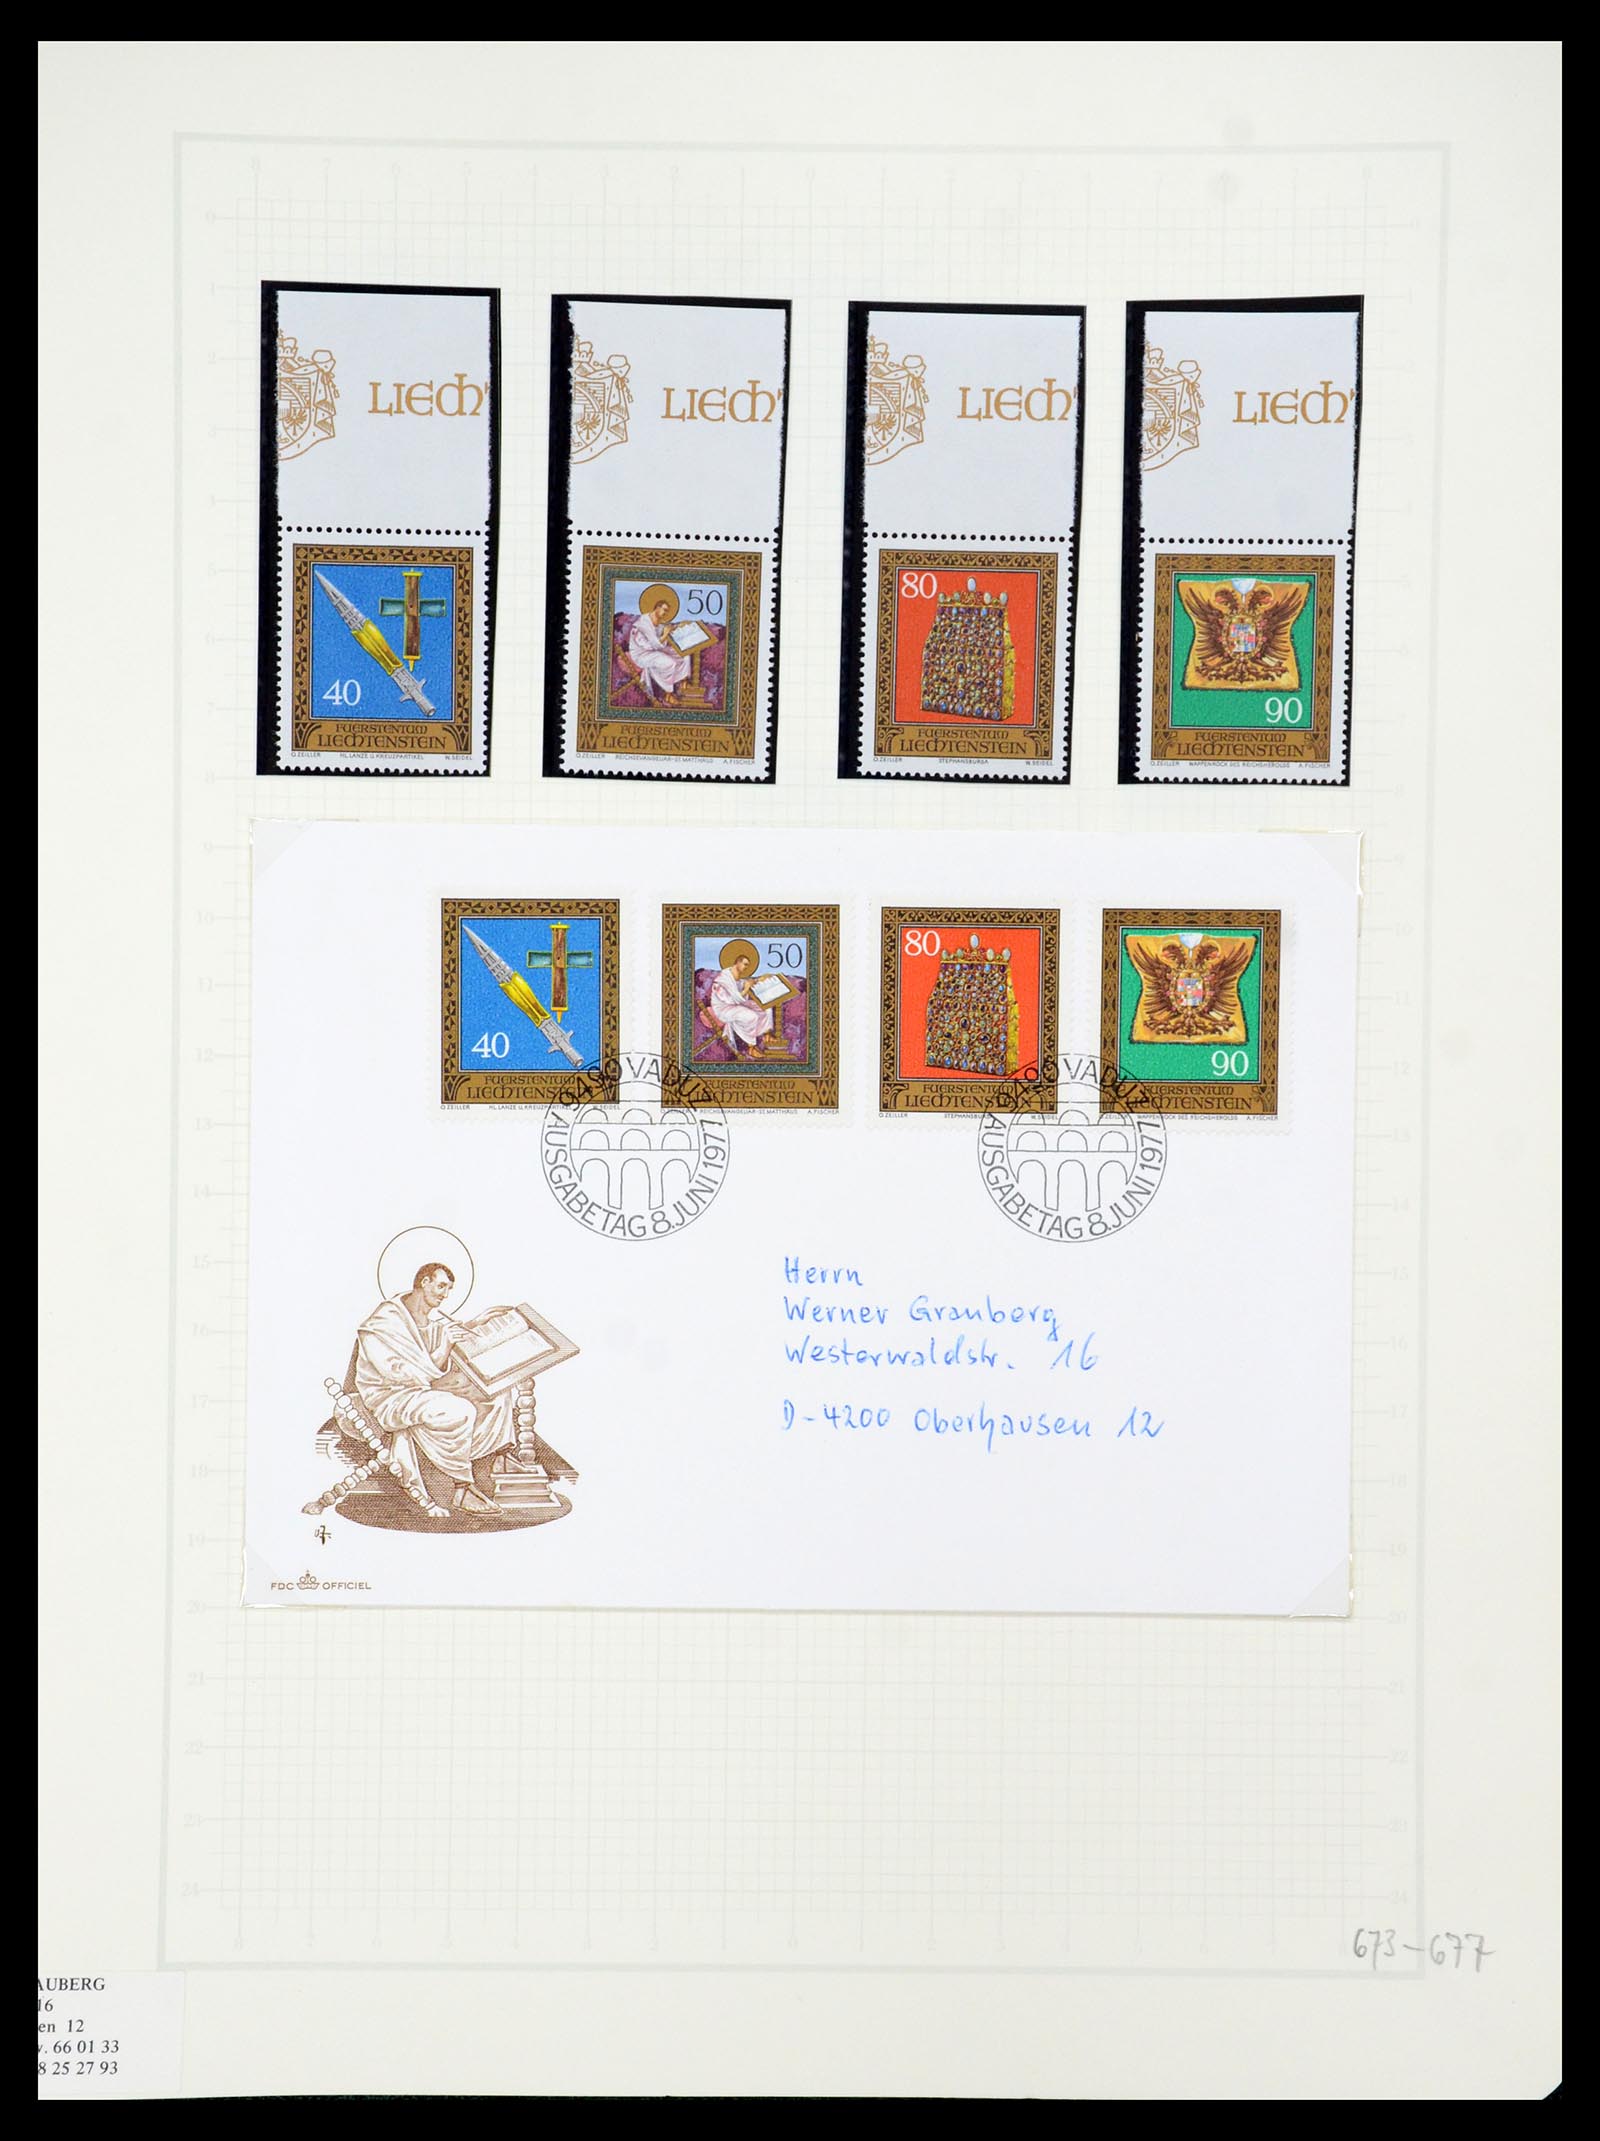 35586 084 - Stamp Collection 35586 Liechtenstein 1912-2021!